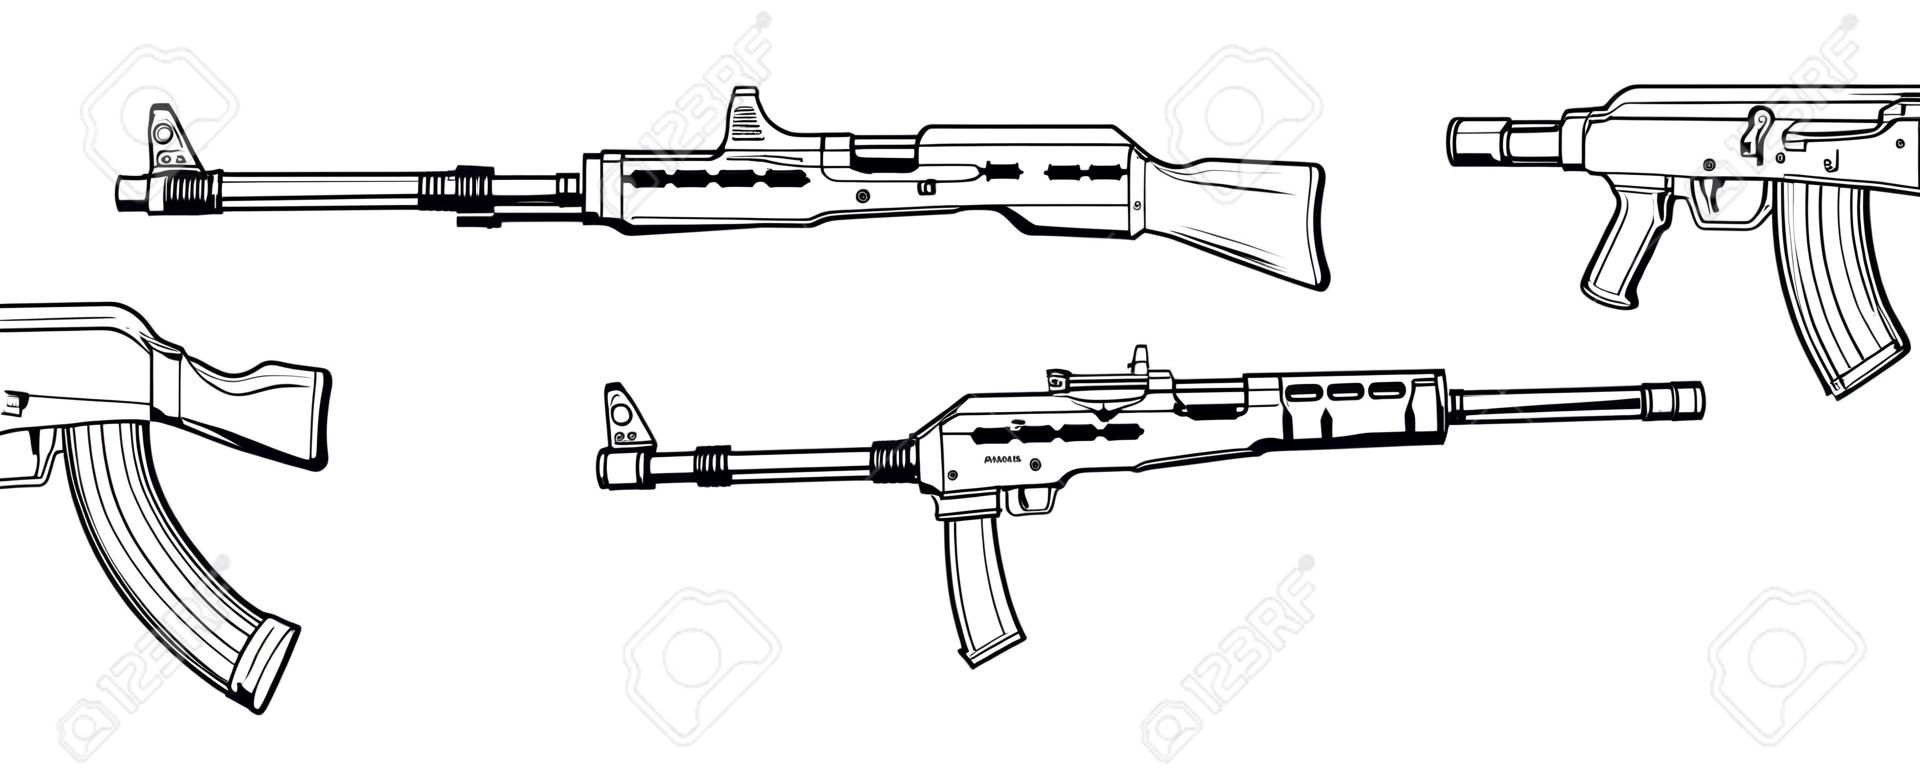 rifle. Firearms. Sketch Set of assault rifle AK-47, AKM, AKC, AKMC, AK-74. Firearms in combat. Assault Gun Wireframe. Machine guns. Assault rifles. Vector graphics to design